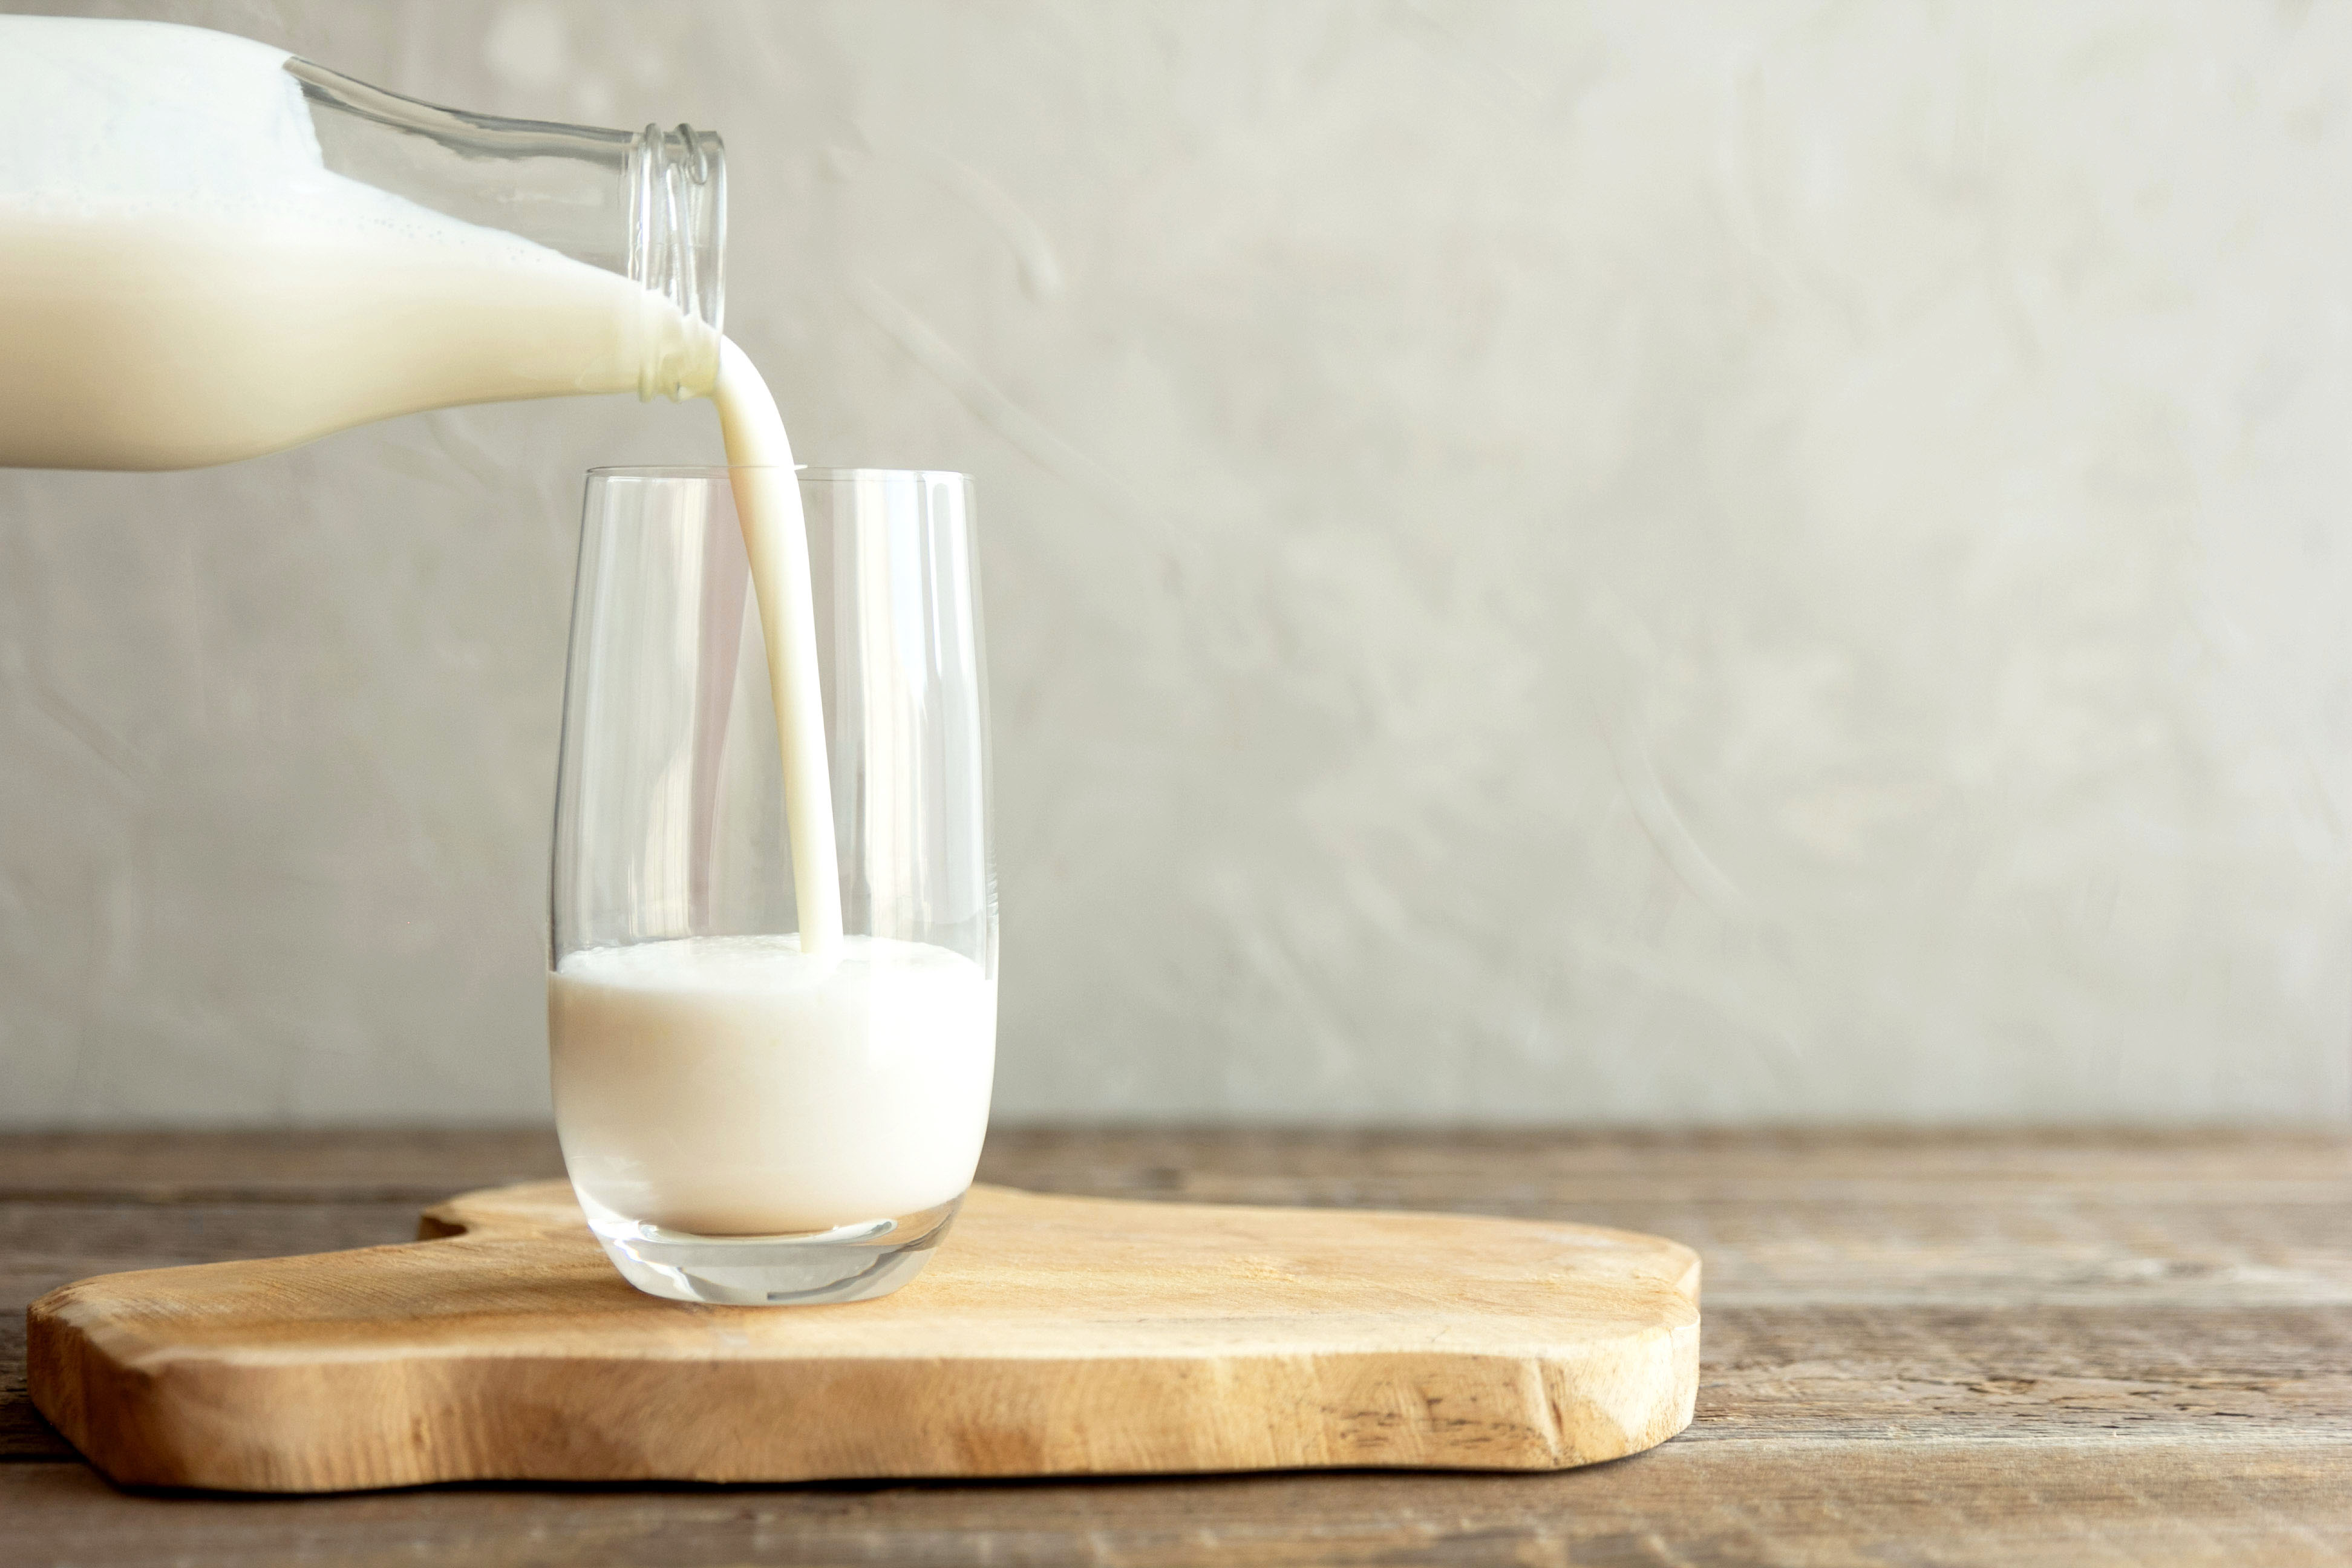 <p><strong>Избирате обезмаслено мляко</strong></p>

<p>Обезмасленото прясно или кисело мляко може да звучи като здравословна опция за закуска, но невинаги е. Въпреки че обезмасленото или нискомасленото мляко ви доставя по-малко калории, то ви лишава от жизненоважните протеини и мазнини, от които тялото се нуждае особено на закуска.</p>